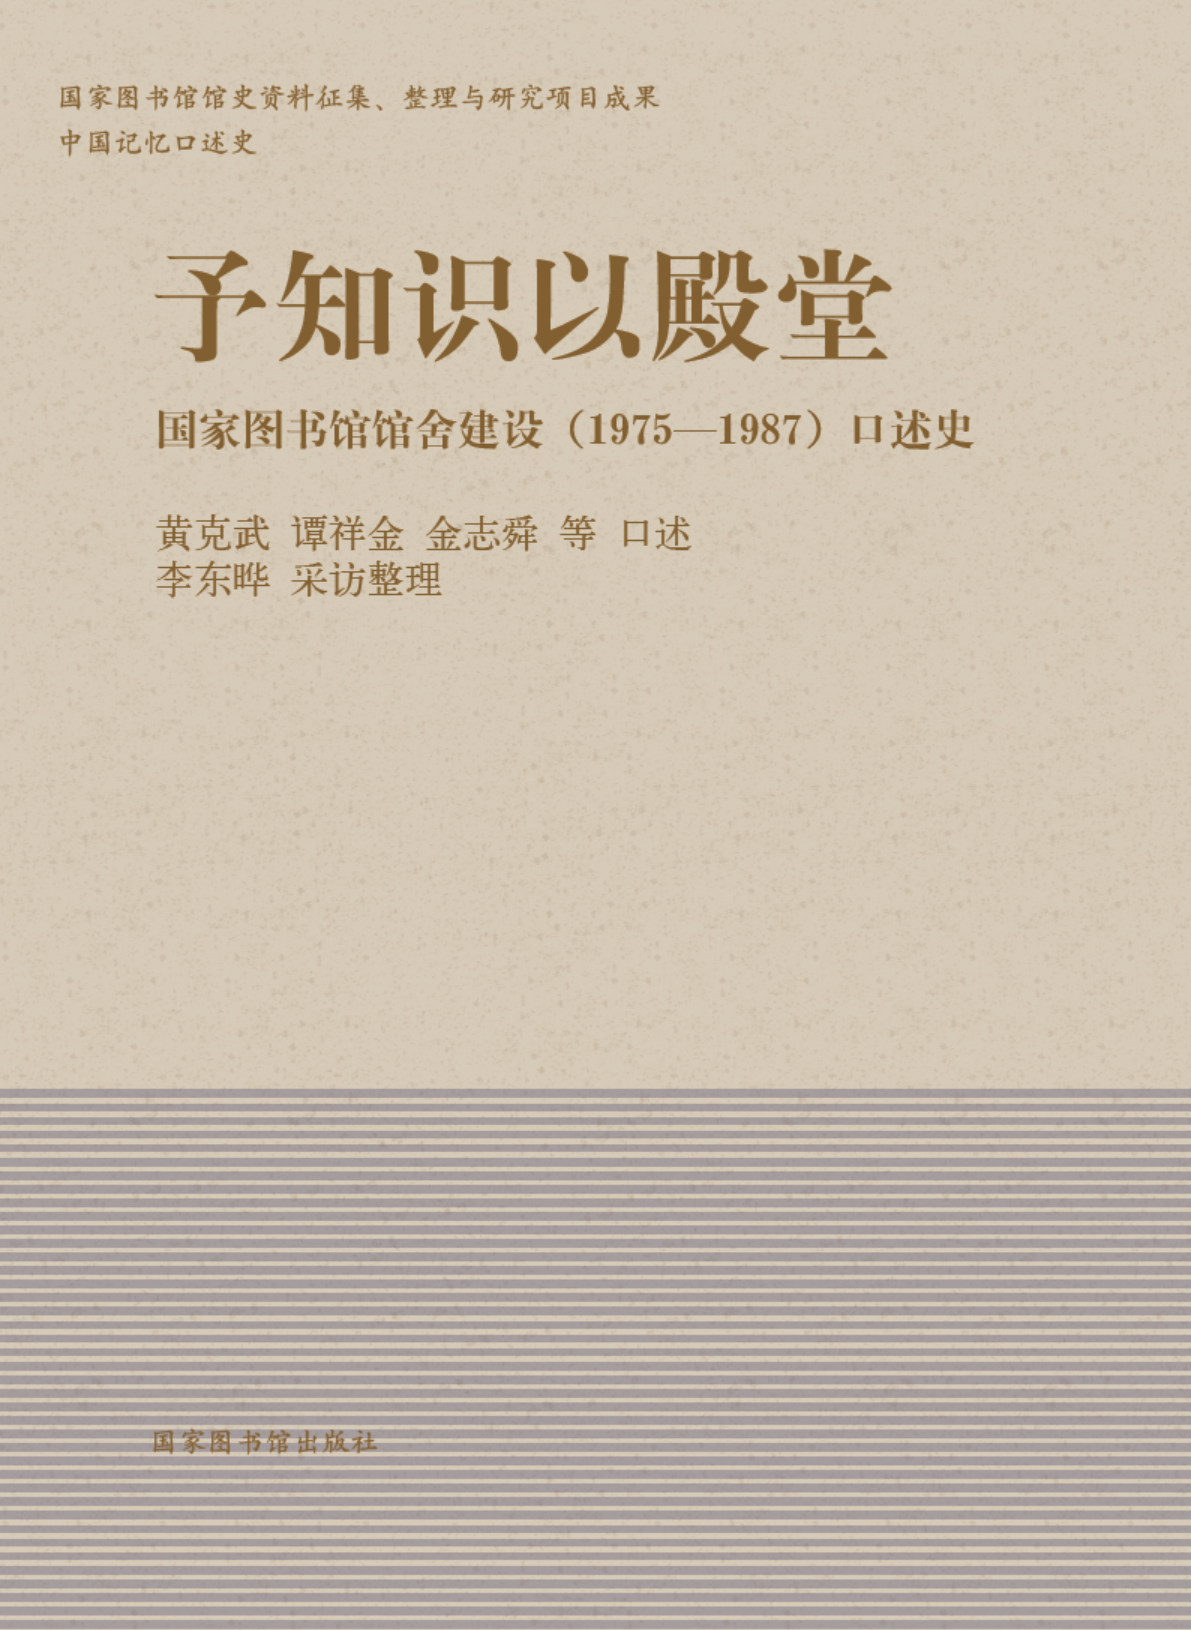 予知识以殿堂：香港正版全年资料免费大全馆舍建设（1975—1987）口述史